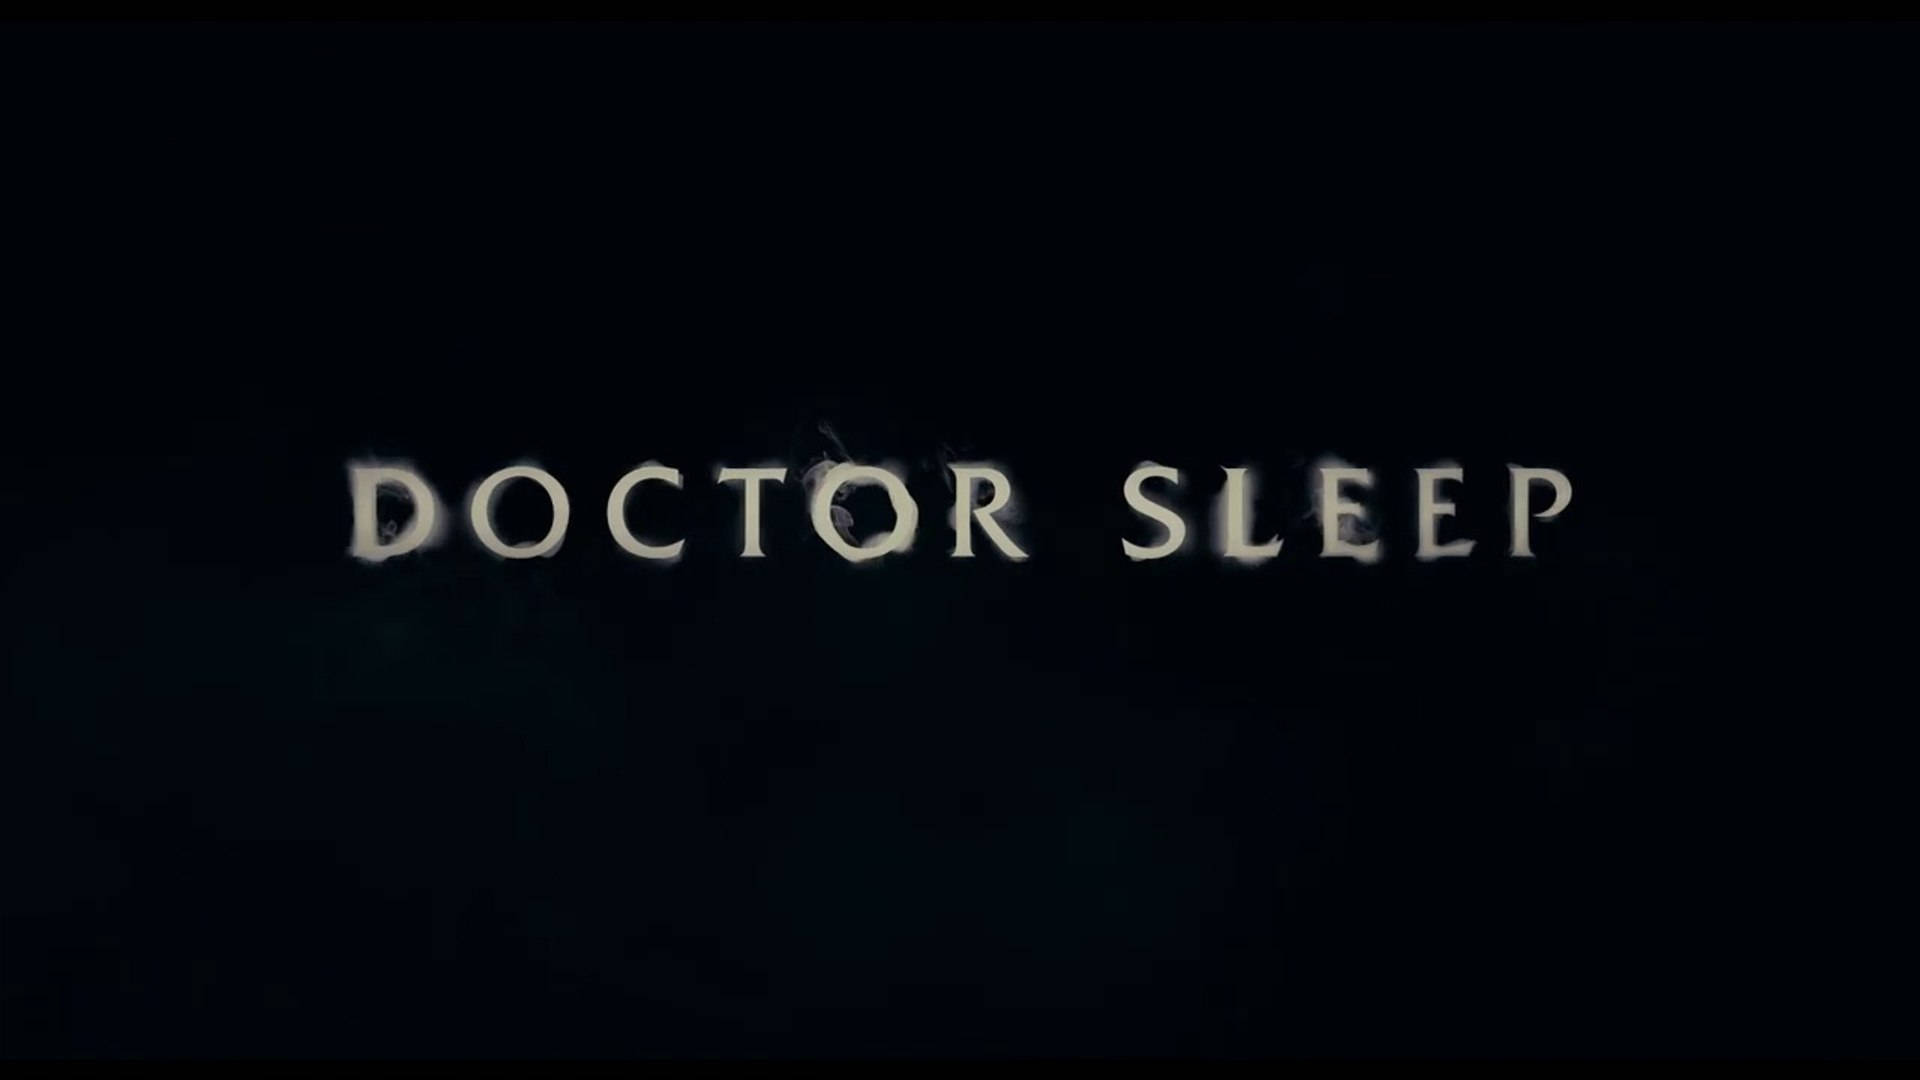 Minimalist Doctor Sleep plakat tapet Wallpaper